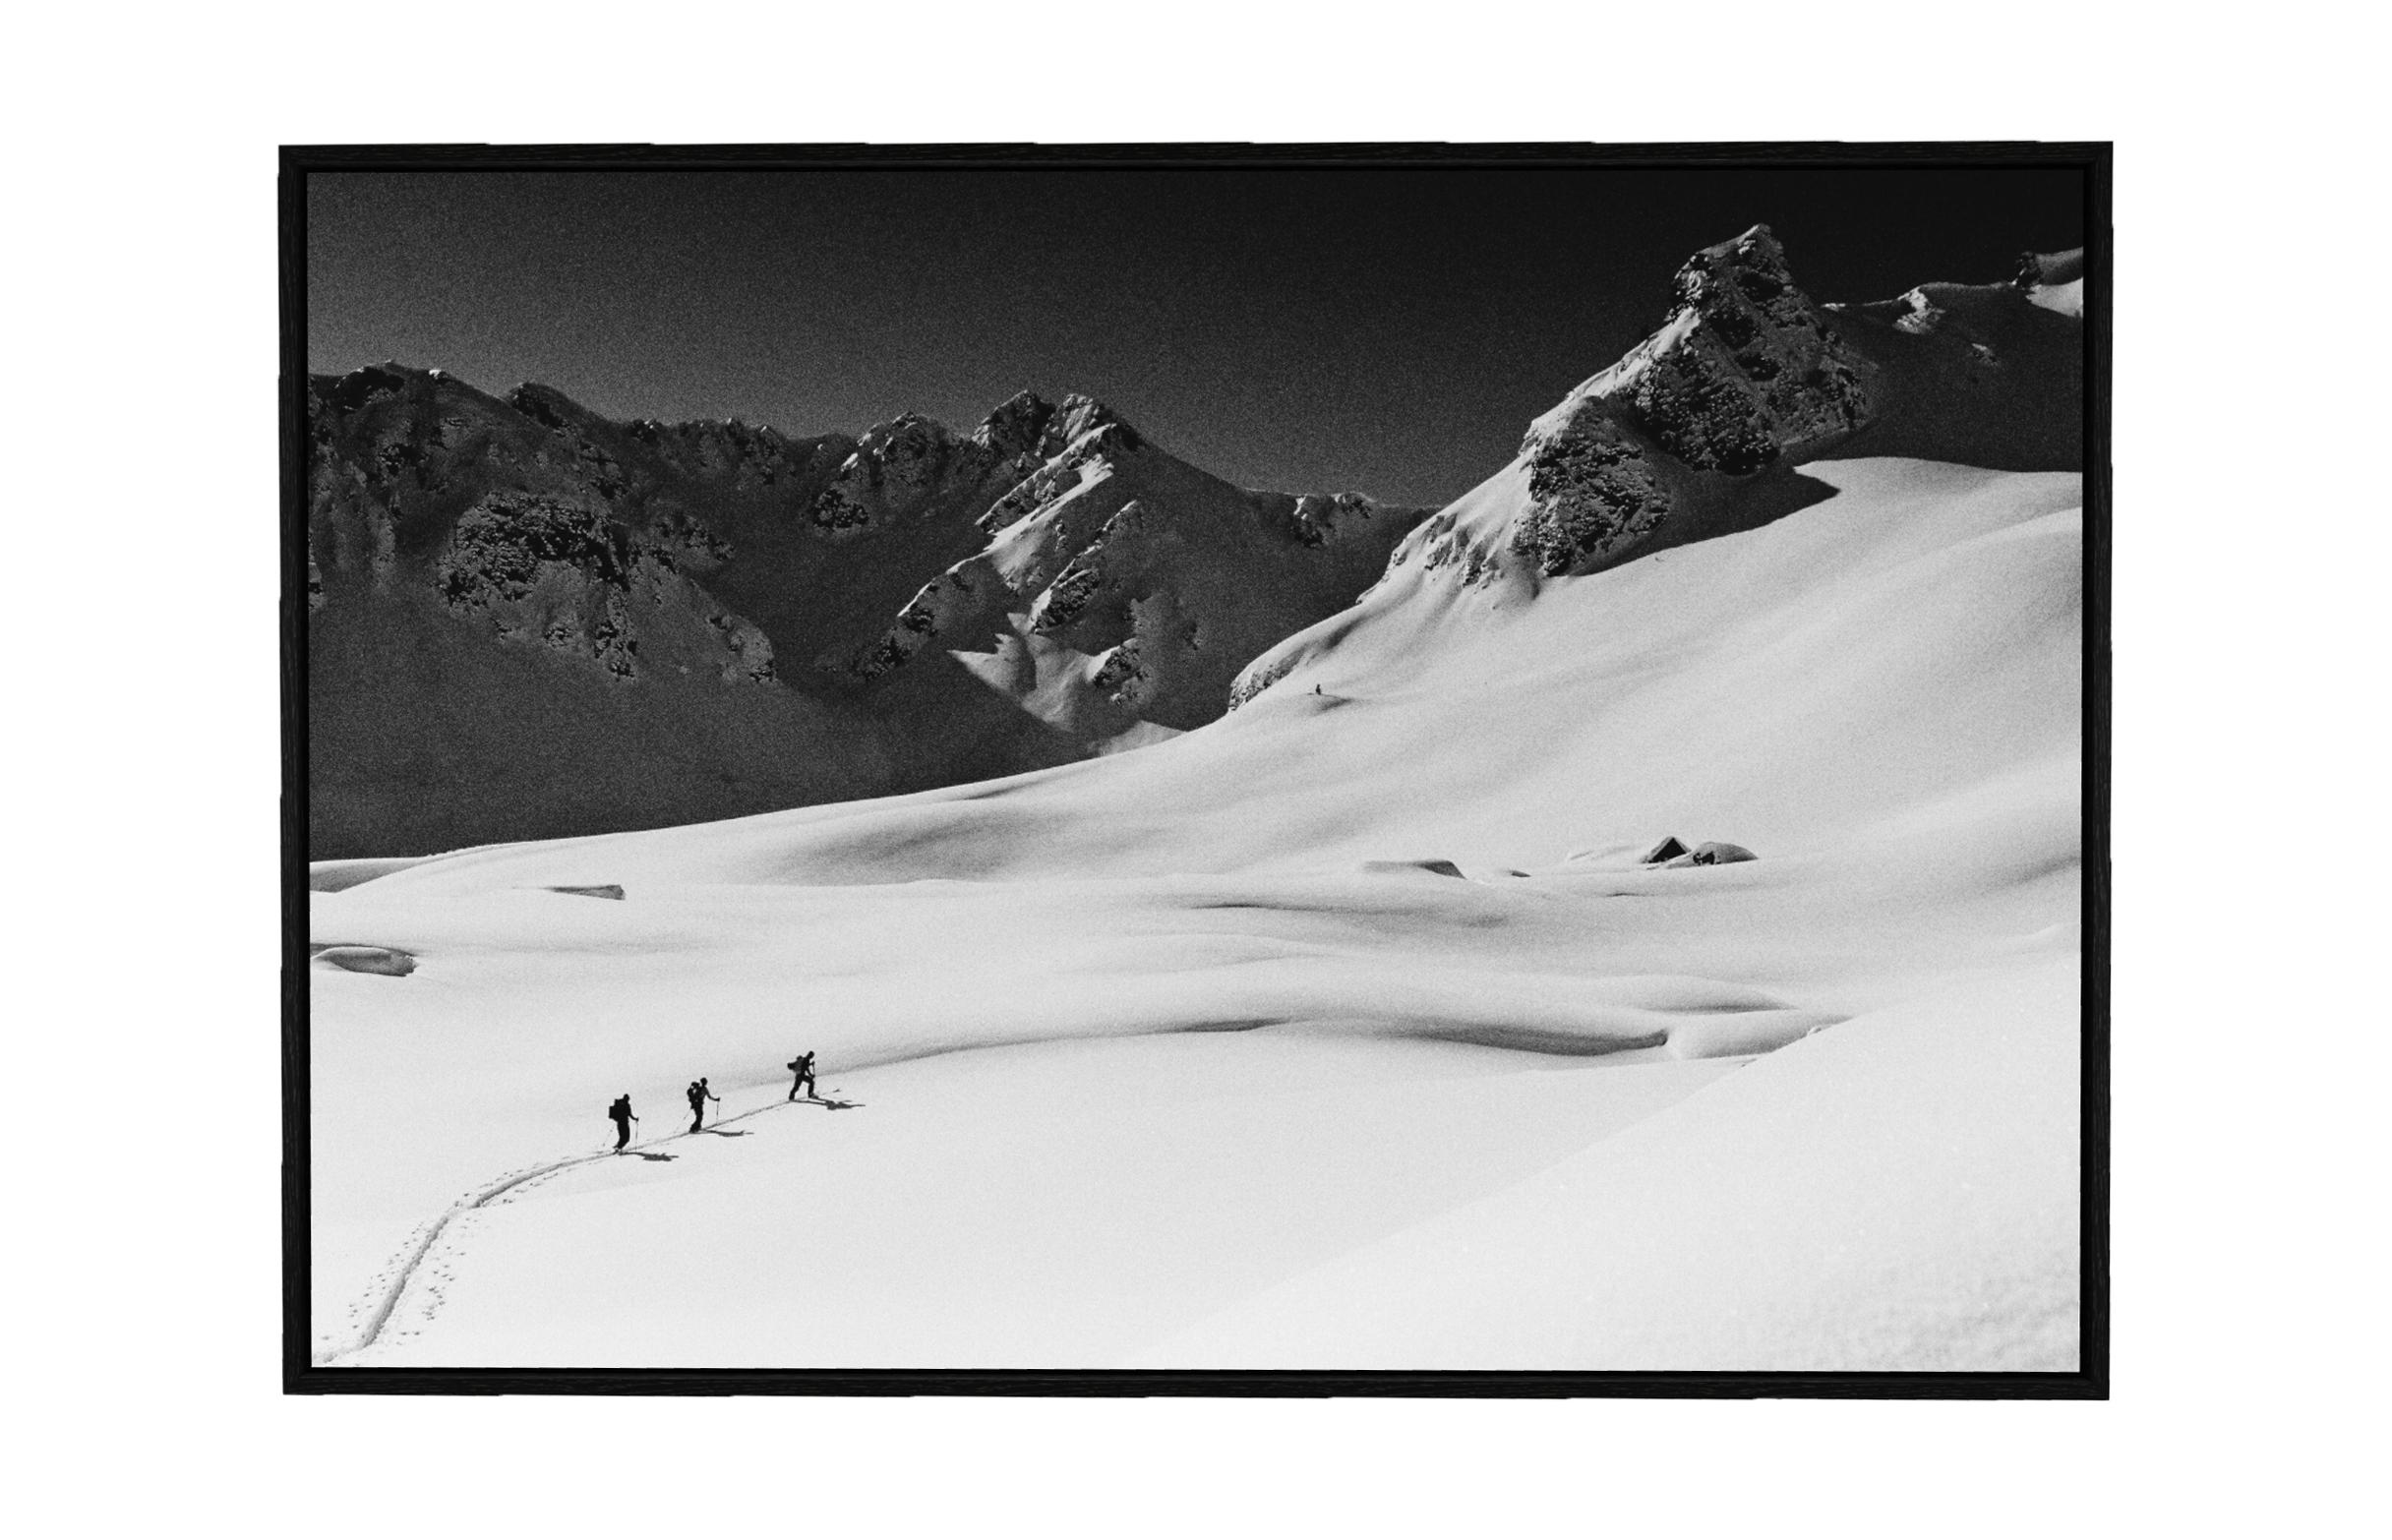 Albania - Mountain Skifahren Schwarz-Weiß-Kunstfotografie (Abstrakter Expressionismus), Photograph, von Carlos Blanchard